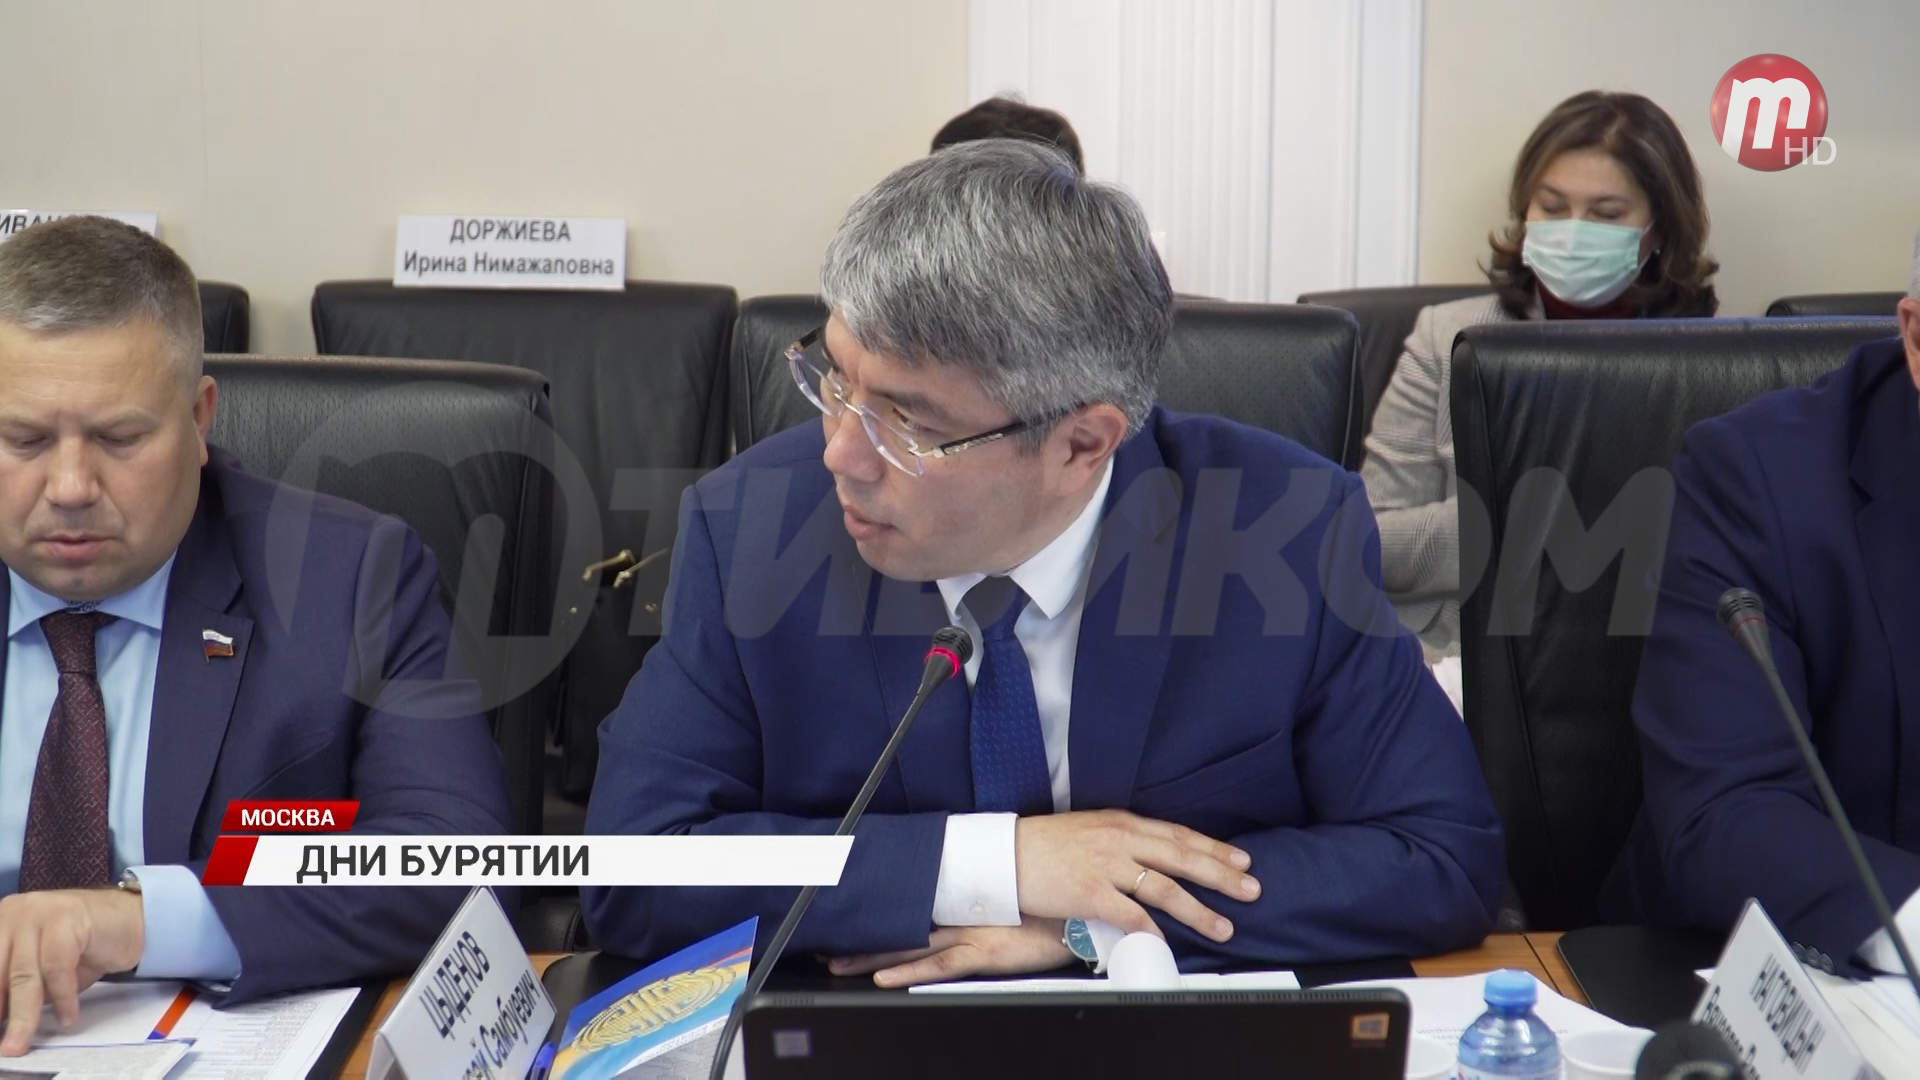 Бурятия получила поддержку Совета Федерации в решении актуальных проблем